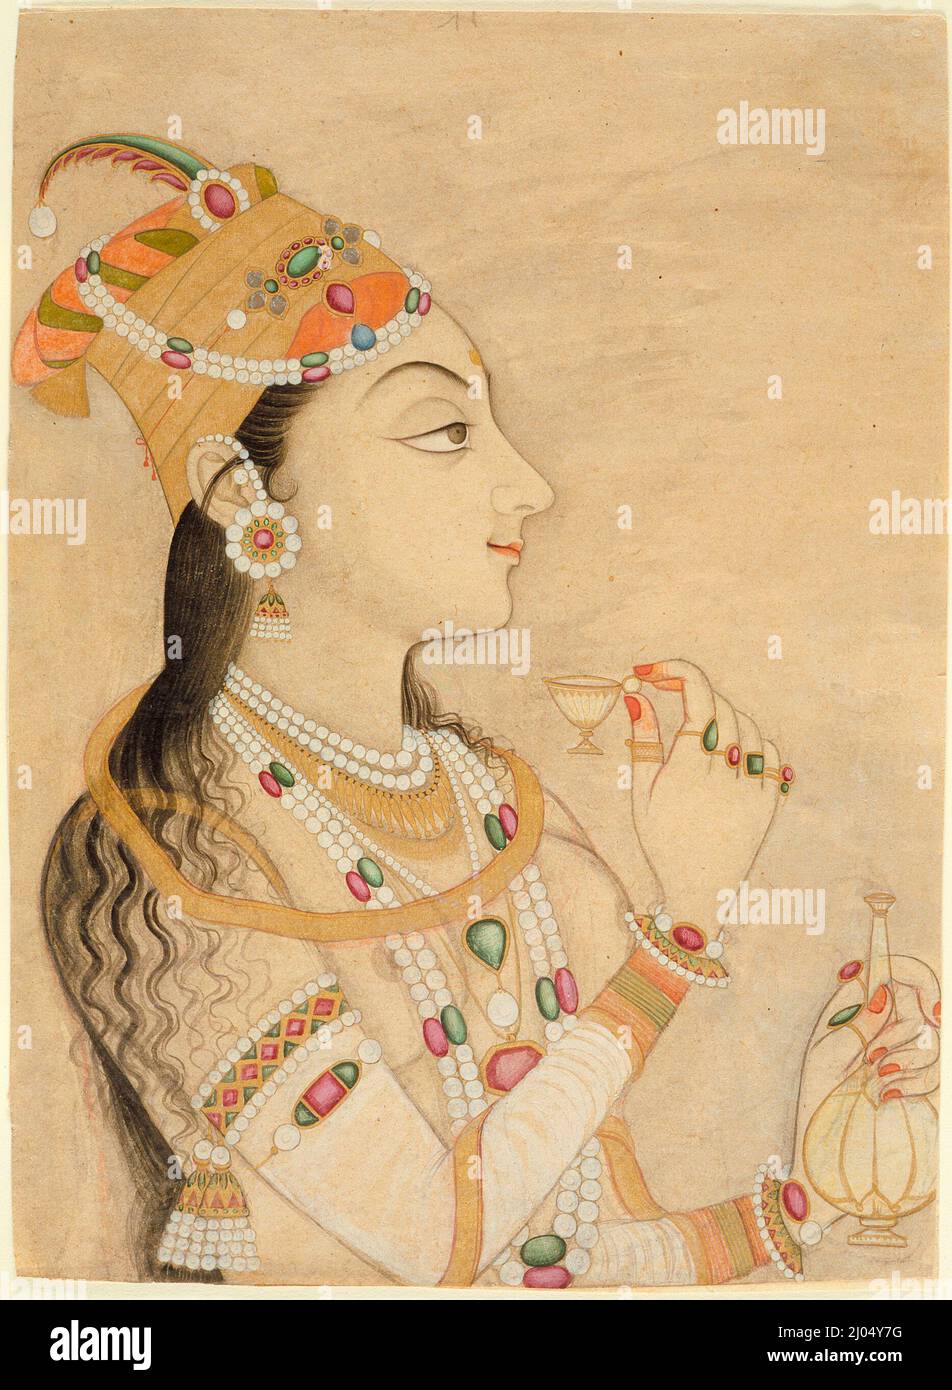 Ritratto idealizzato dell'imperatrice Mughal Nur Jahan (1577-1645)?. India, Rajasthan, Kishangarh, circa 1725-1750. Disegni; acquerelli. Acquerello opaco e oro su carta Foto Stock